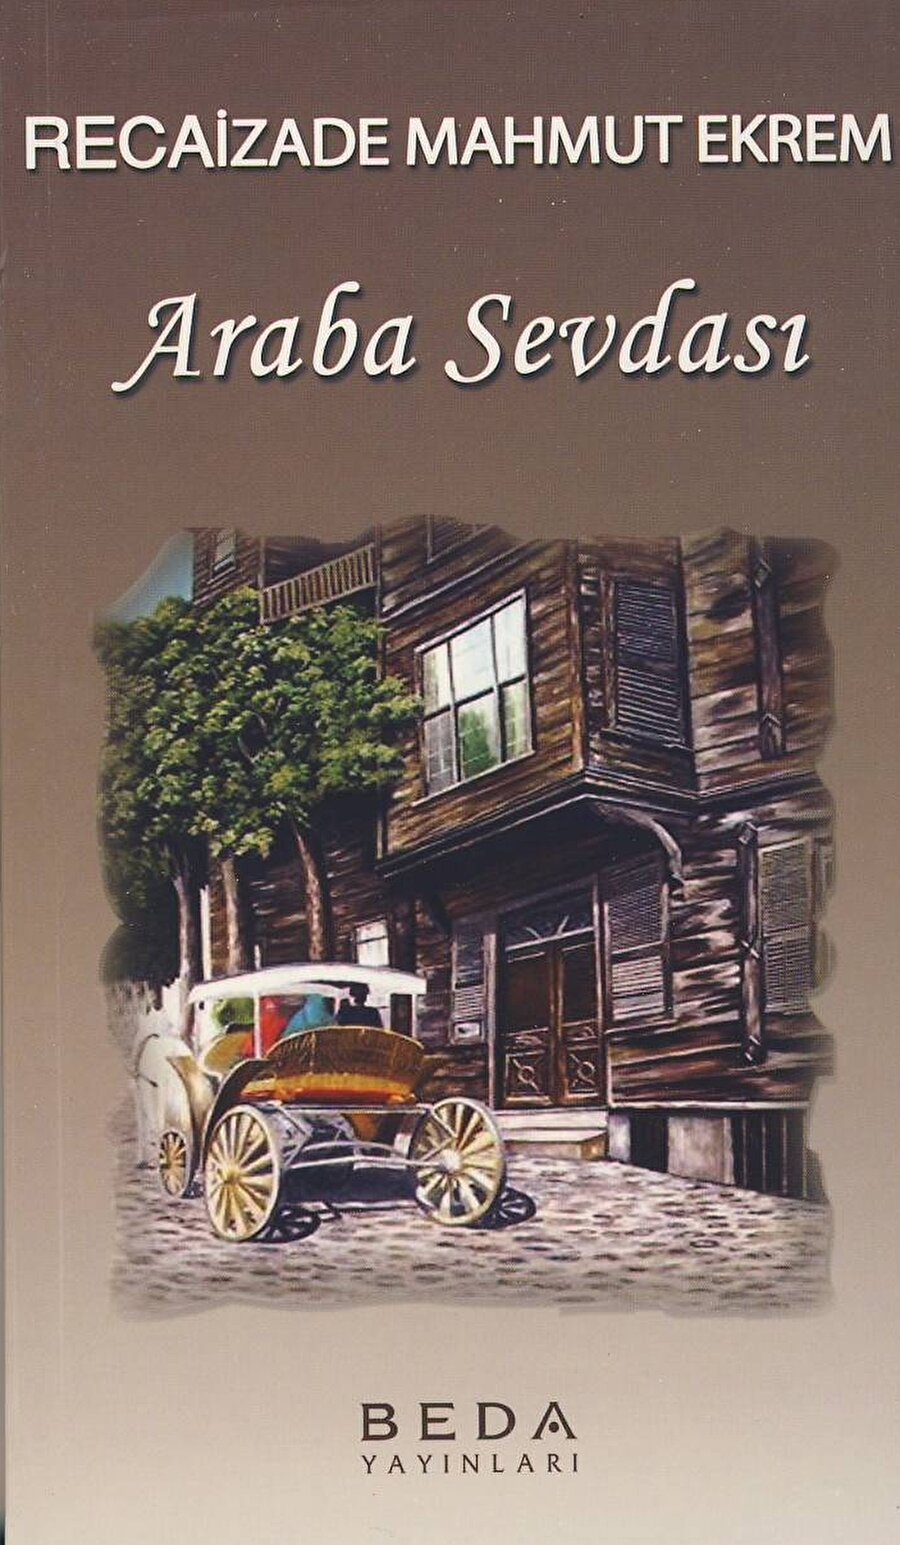 Araba Sevdası
1889 yılında yayınlanan Araba Sevdası, Türk edebiyatındaki ilk realist romandır.  Recaizade Mahmud Ekrem'in imzasını taşıyan eserde kendisine miras kalan Bihruz Bey'in hikayesini merakla okuyacaksınız.